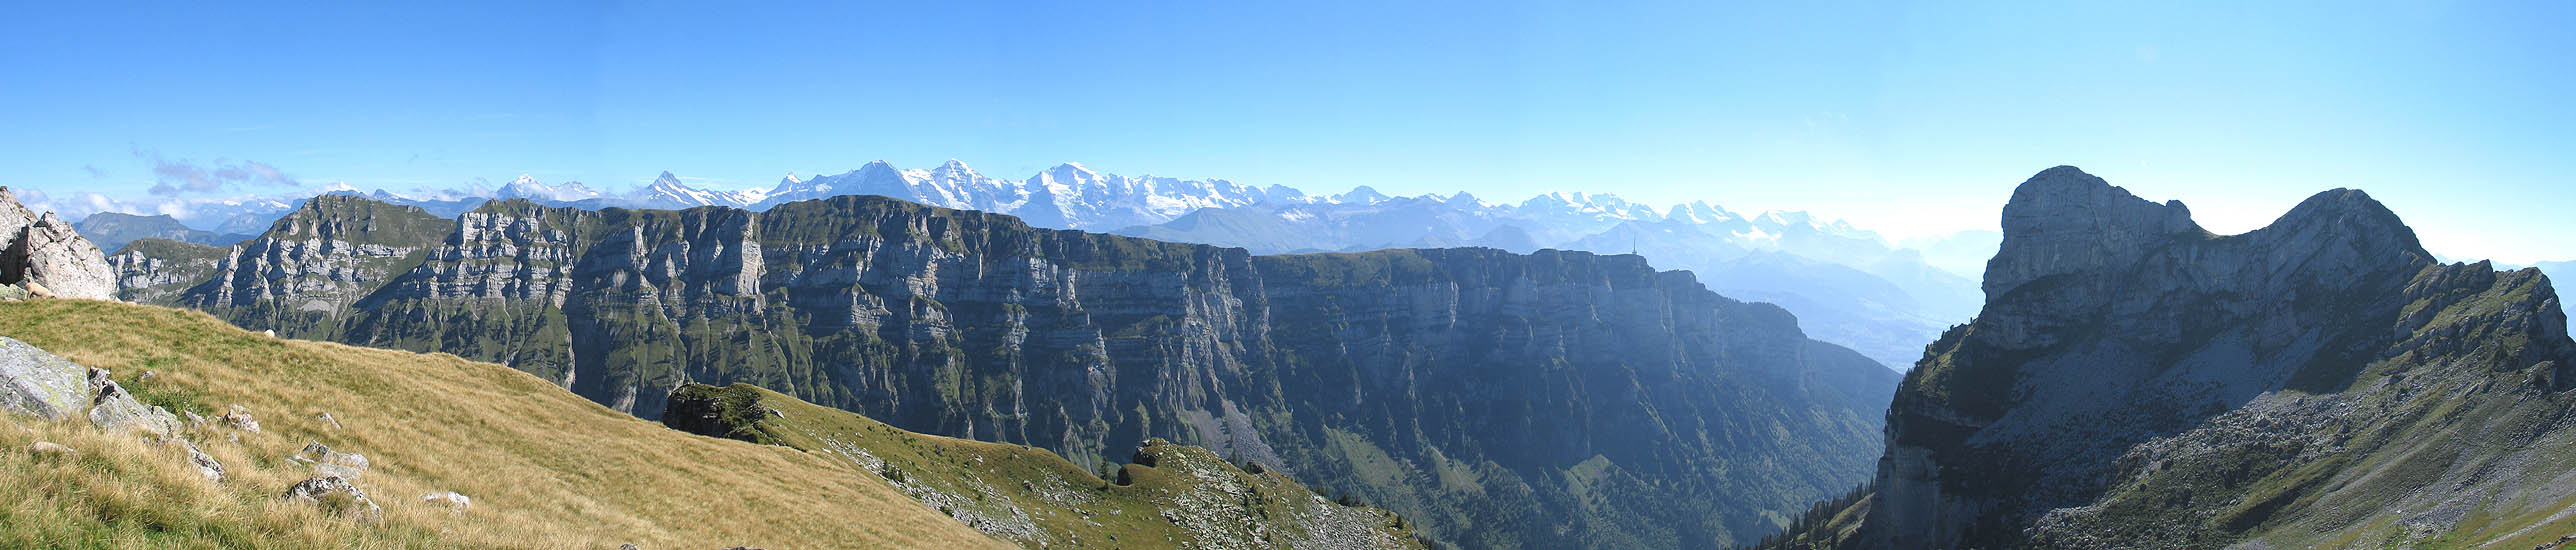 Schreckhorn, Jungfraumassiv, Güggisgrat and Niederhorn / Foto: F.Bieri